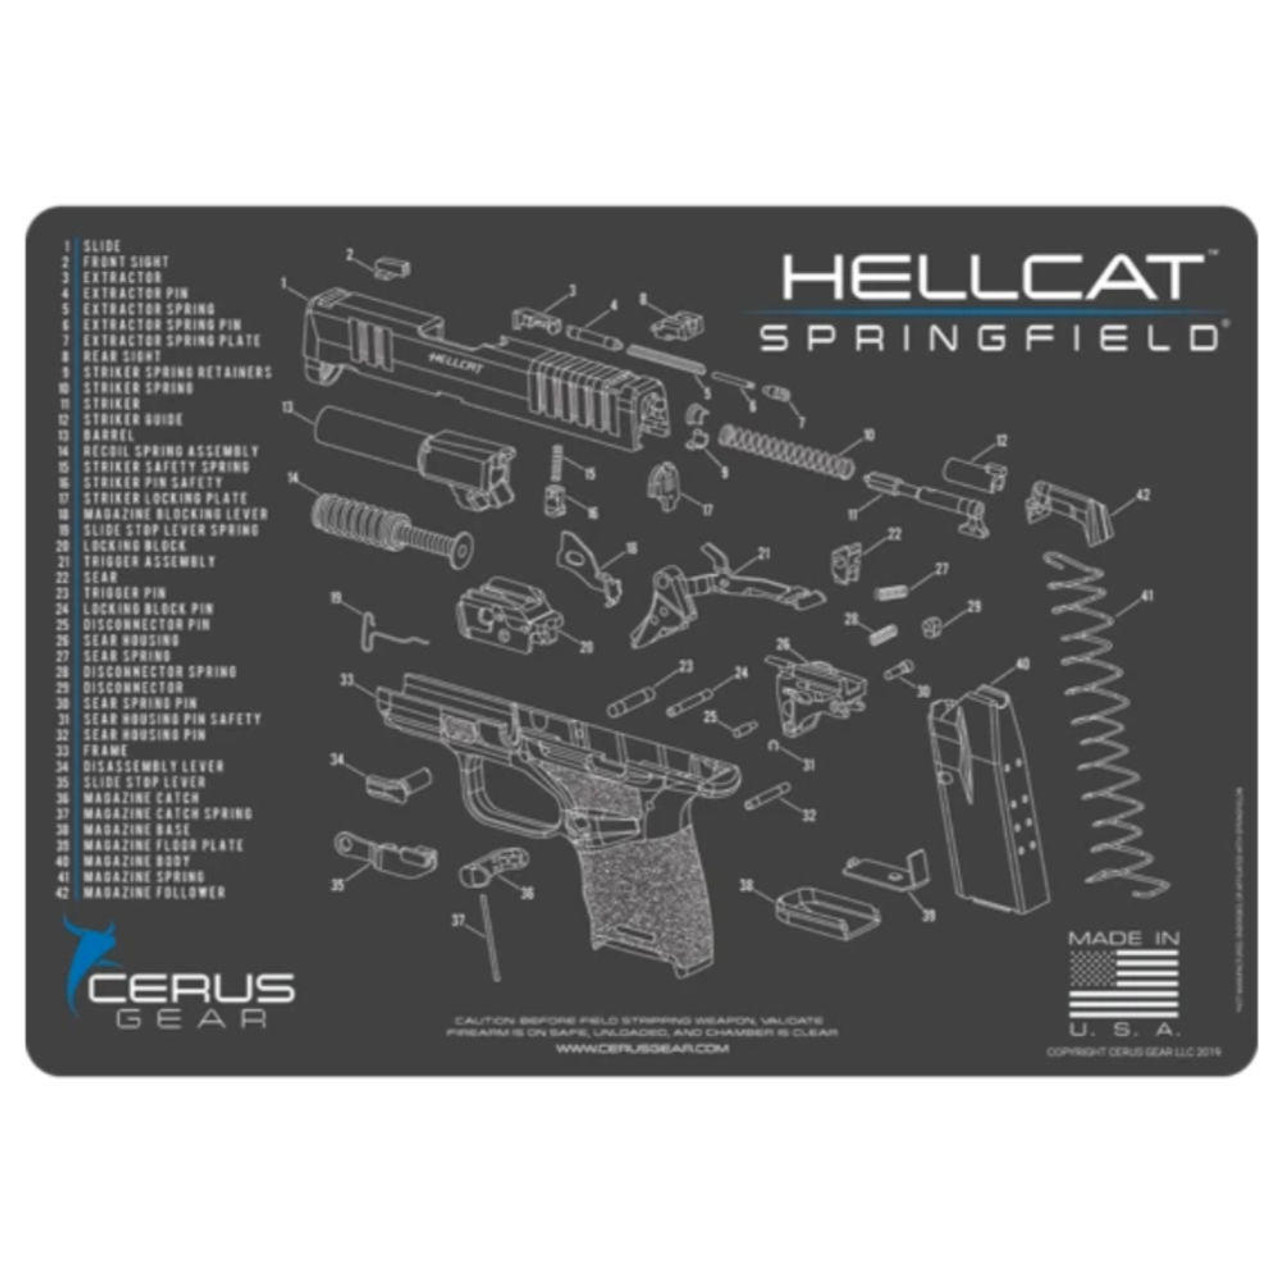 Springfield Hellcat Schematic Handgun Mat - Charcoal Gray/cerus